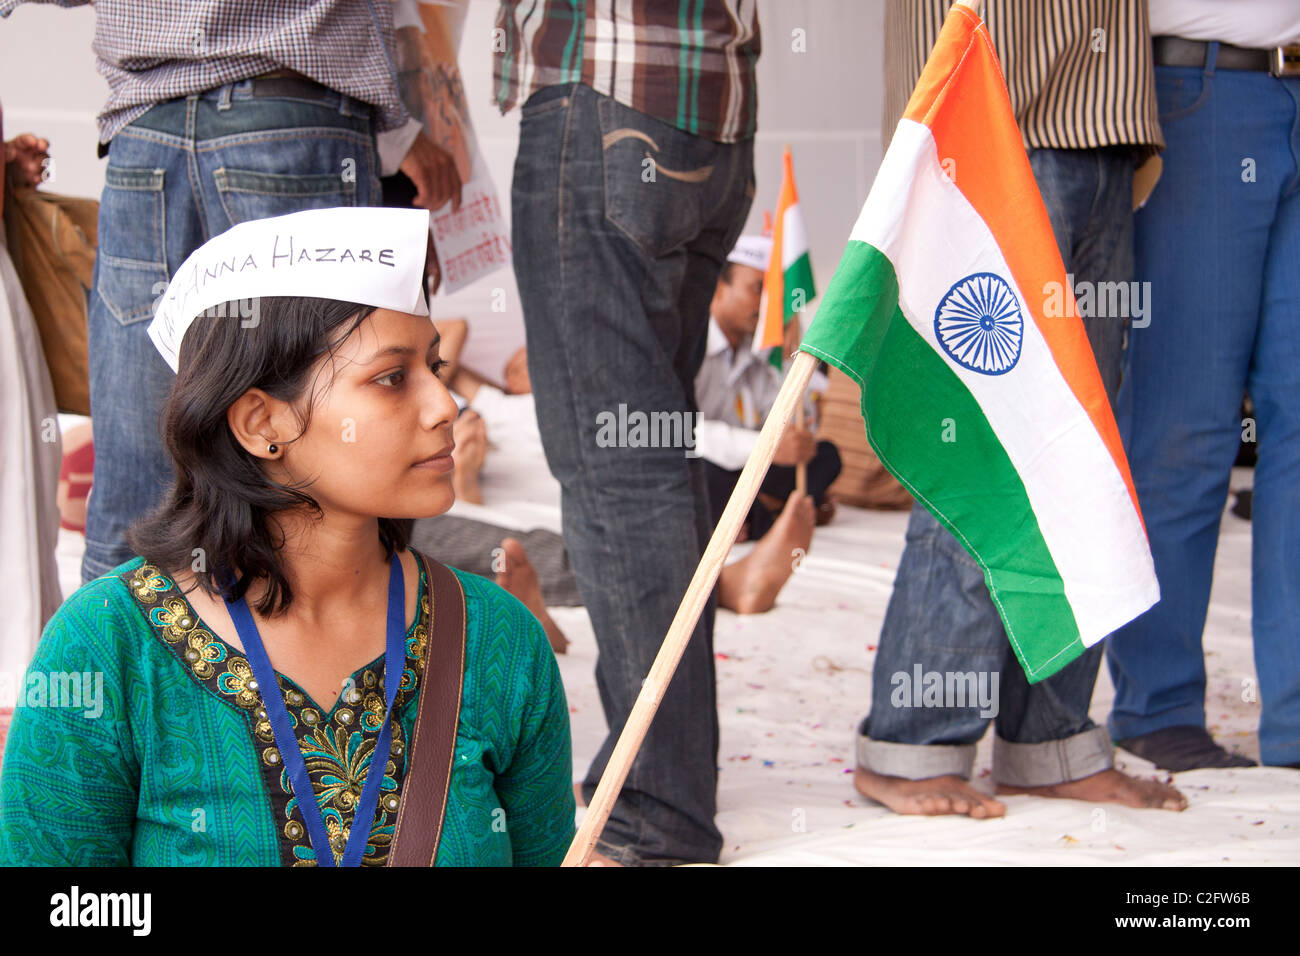 A supporter of Anna Hazare's anti corruption rally with India’s flag at Azad Maidan in Mumbai (Bombay), Maharashtra, India, Asia Stock Photo